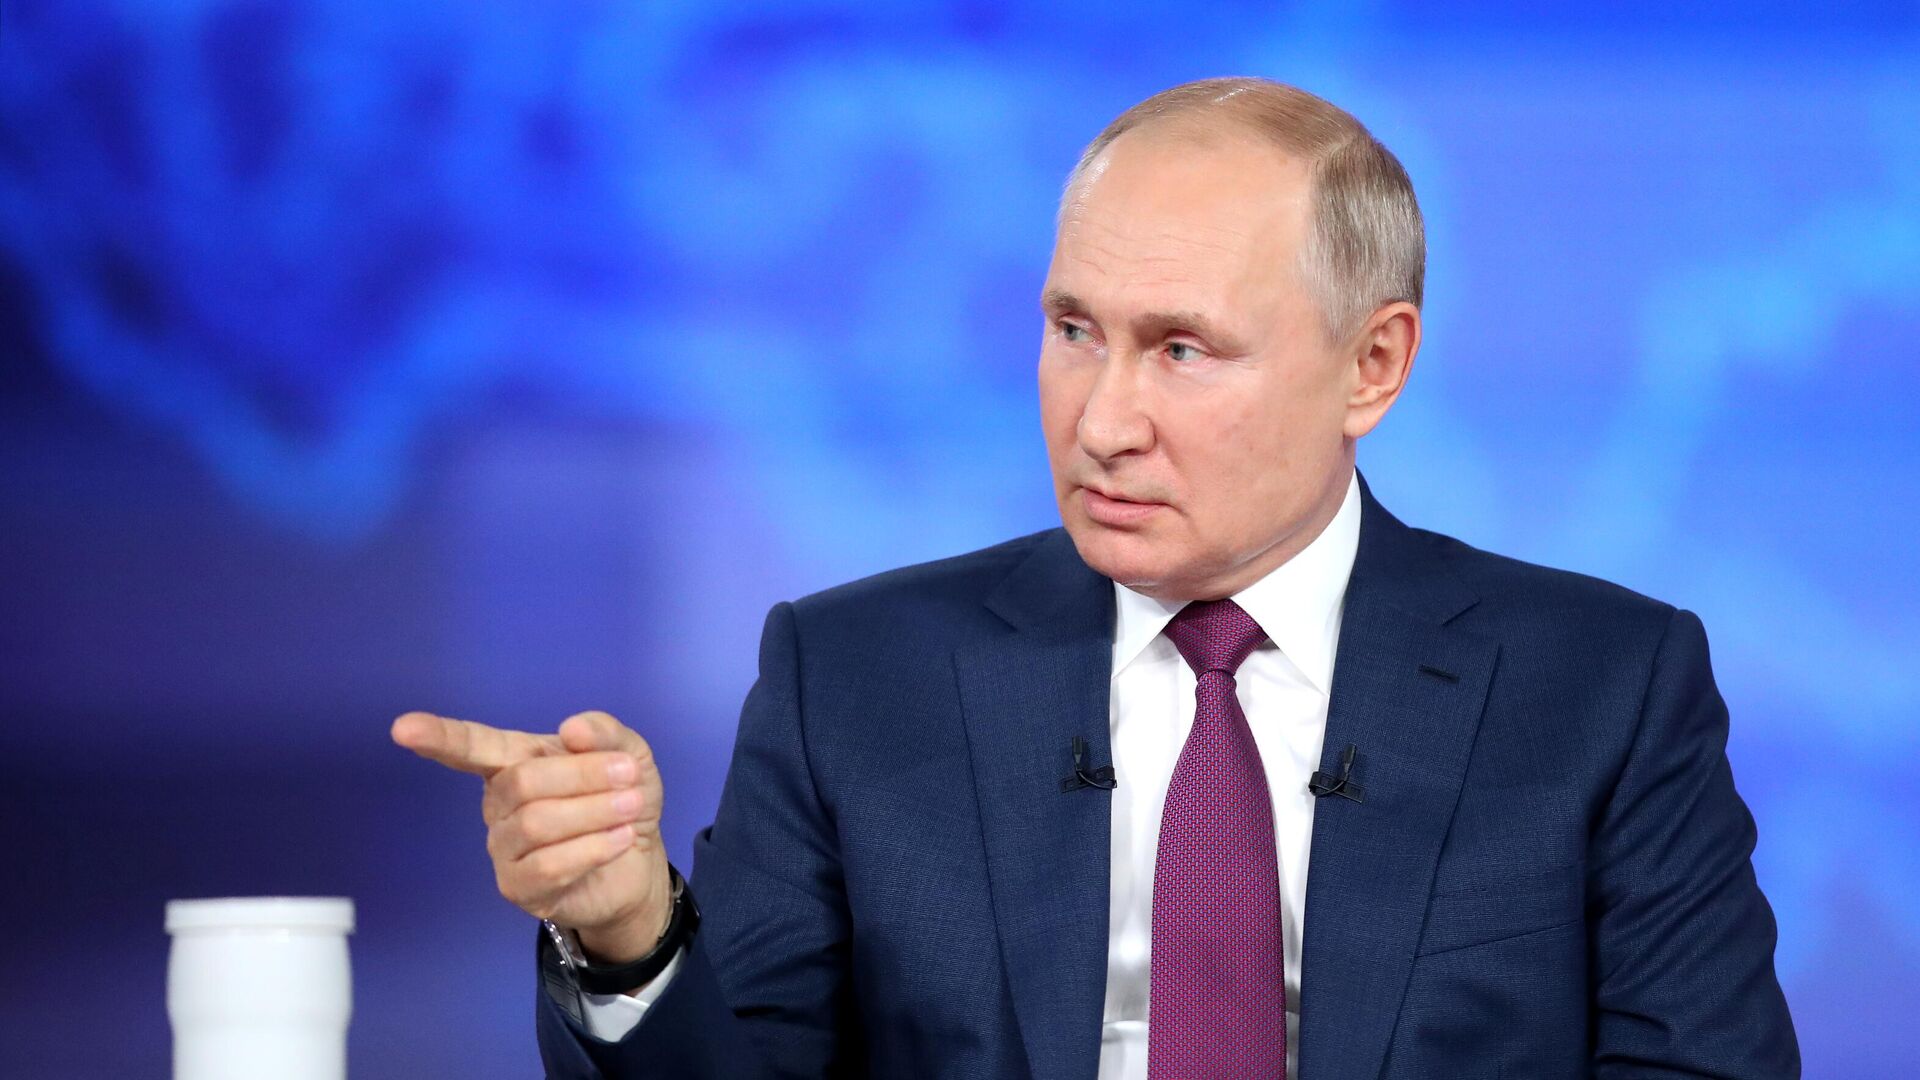 Rusijos prezidentas Vladimiras Putinas atsako į rusų klausimus kasmetinėje specialioje programoje Tiesioginė linija su Vladimiru Putinu - Sputnik Lietuva, 1920, 30.06.2021